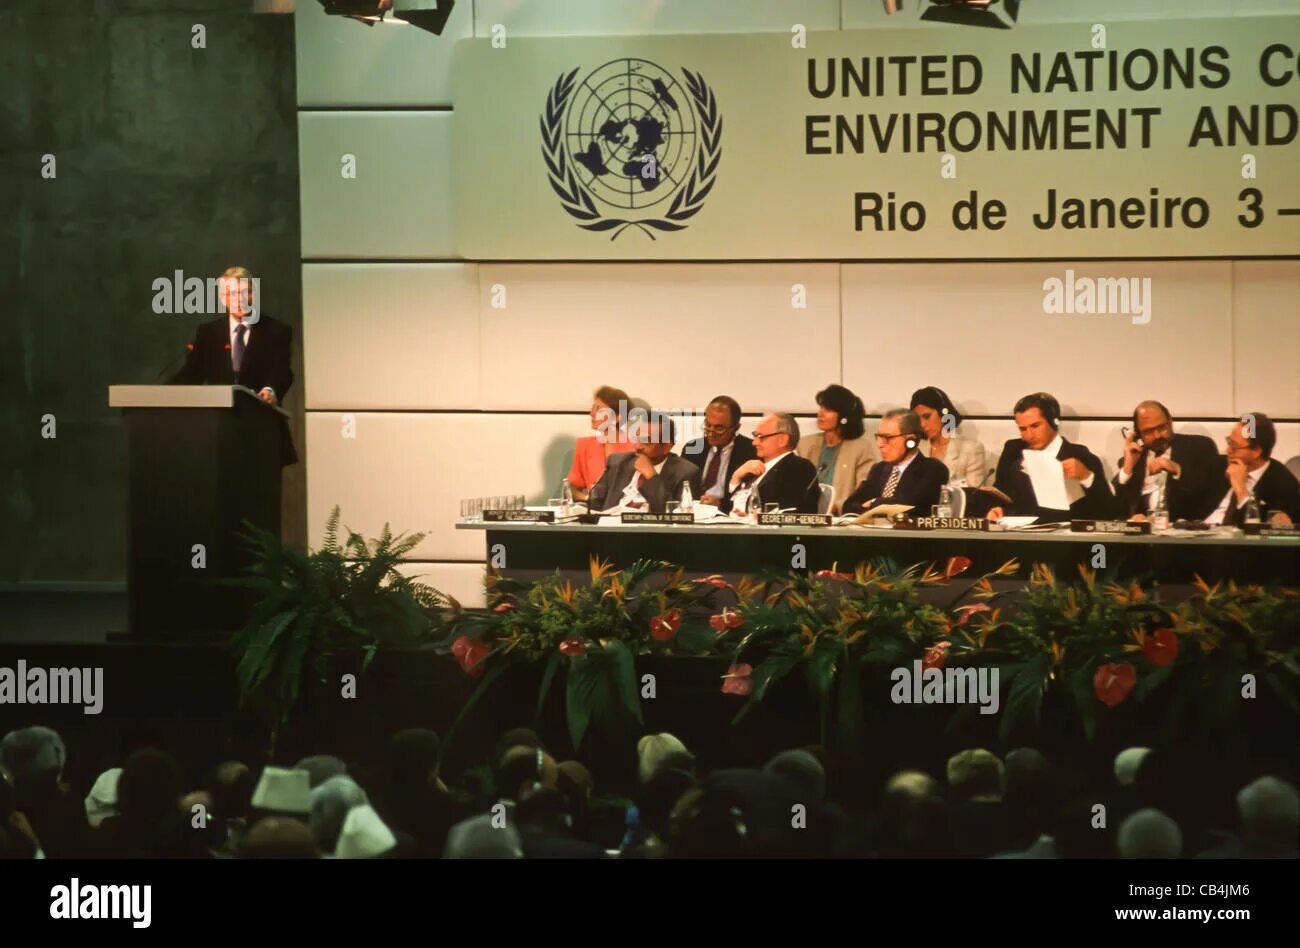 Конференция саммит. Конференция ООН В Рио де Жанейро 1992. Саммит в Рио де Жанейро 1992. Конференция ООН по окружающей среде и развитию в Рио-де-Жанейро. Конференции ООН по окружающей среде в Рио-де-Жанейро (1992 г.)».